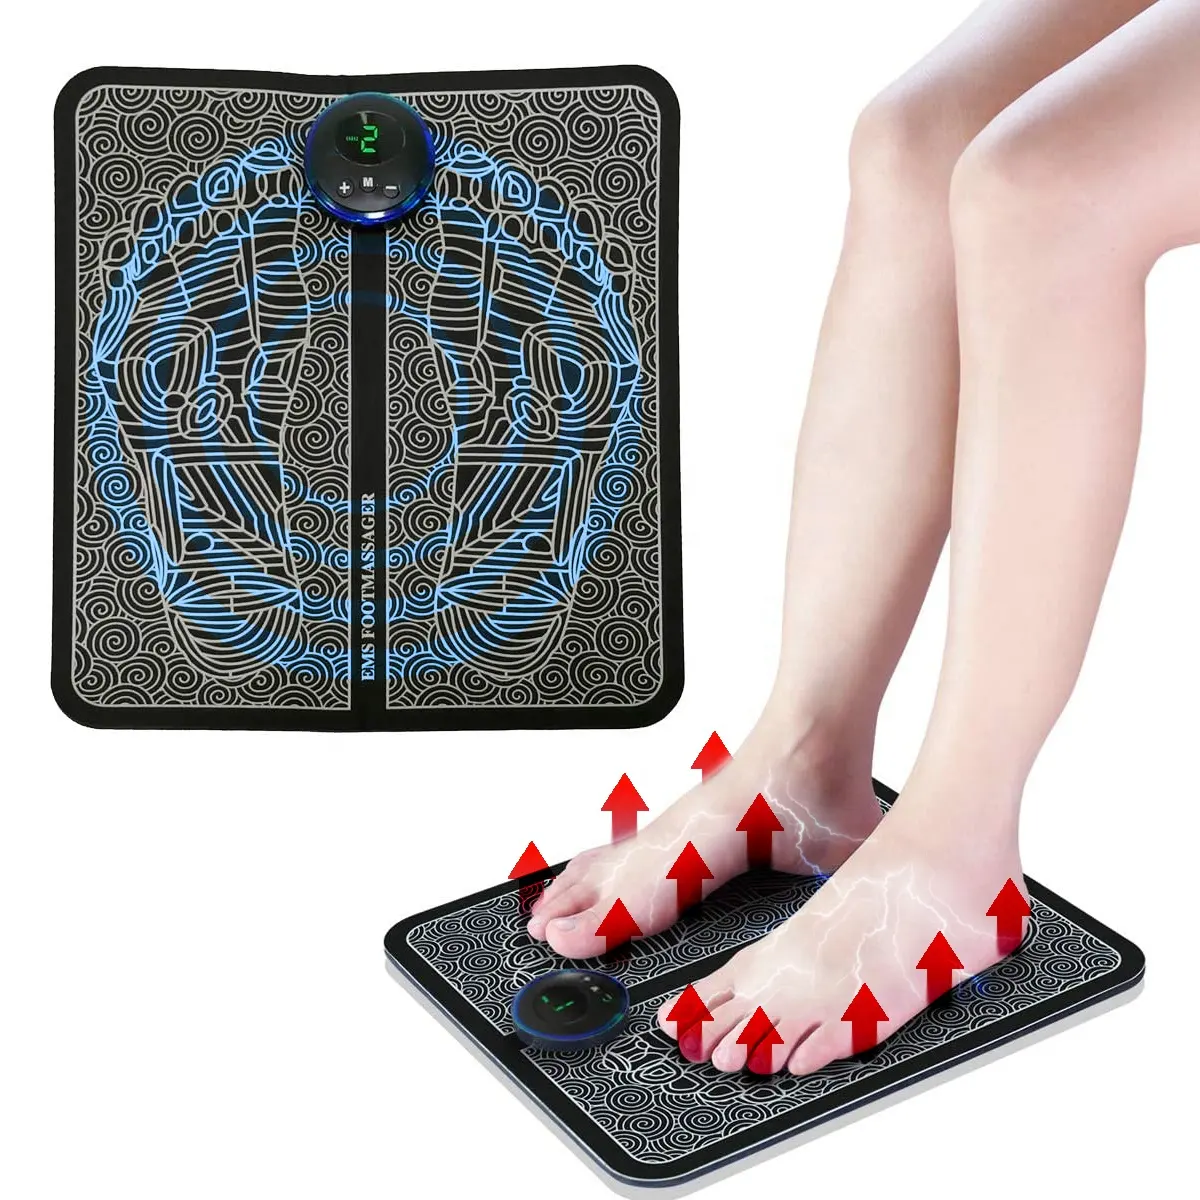 नई उत्पाद आत्म देखभाल ईएमएस पैर चटाई मालिश मशीन के लिए पैर मालिश और पैर मालिश